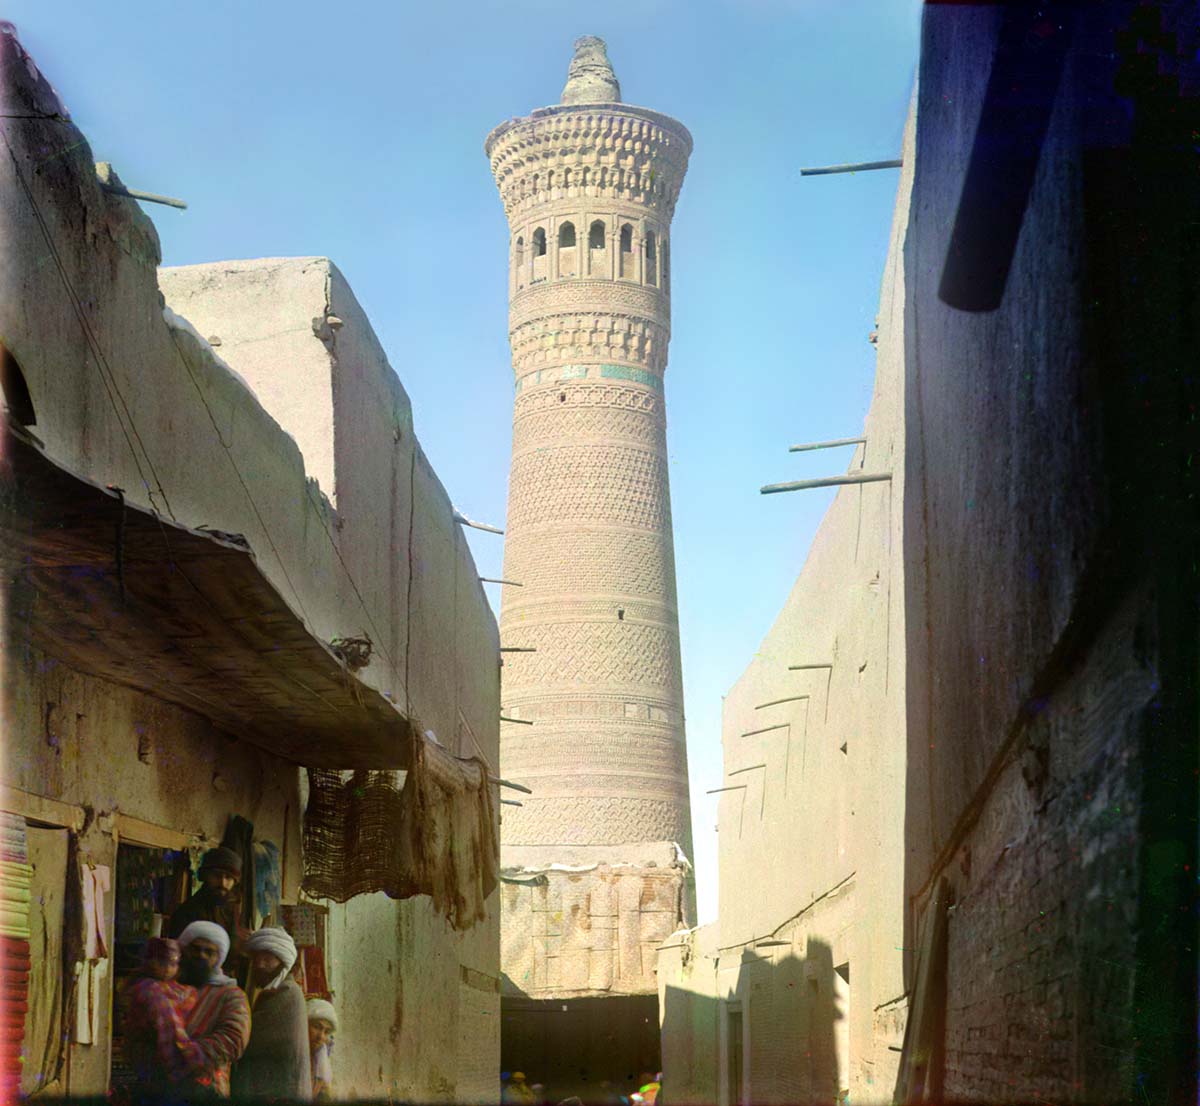 Bukhara. Big Minar in Old Bukhara